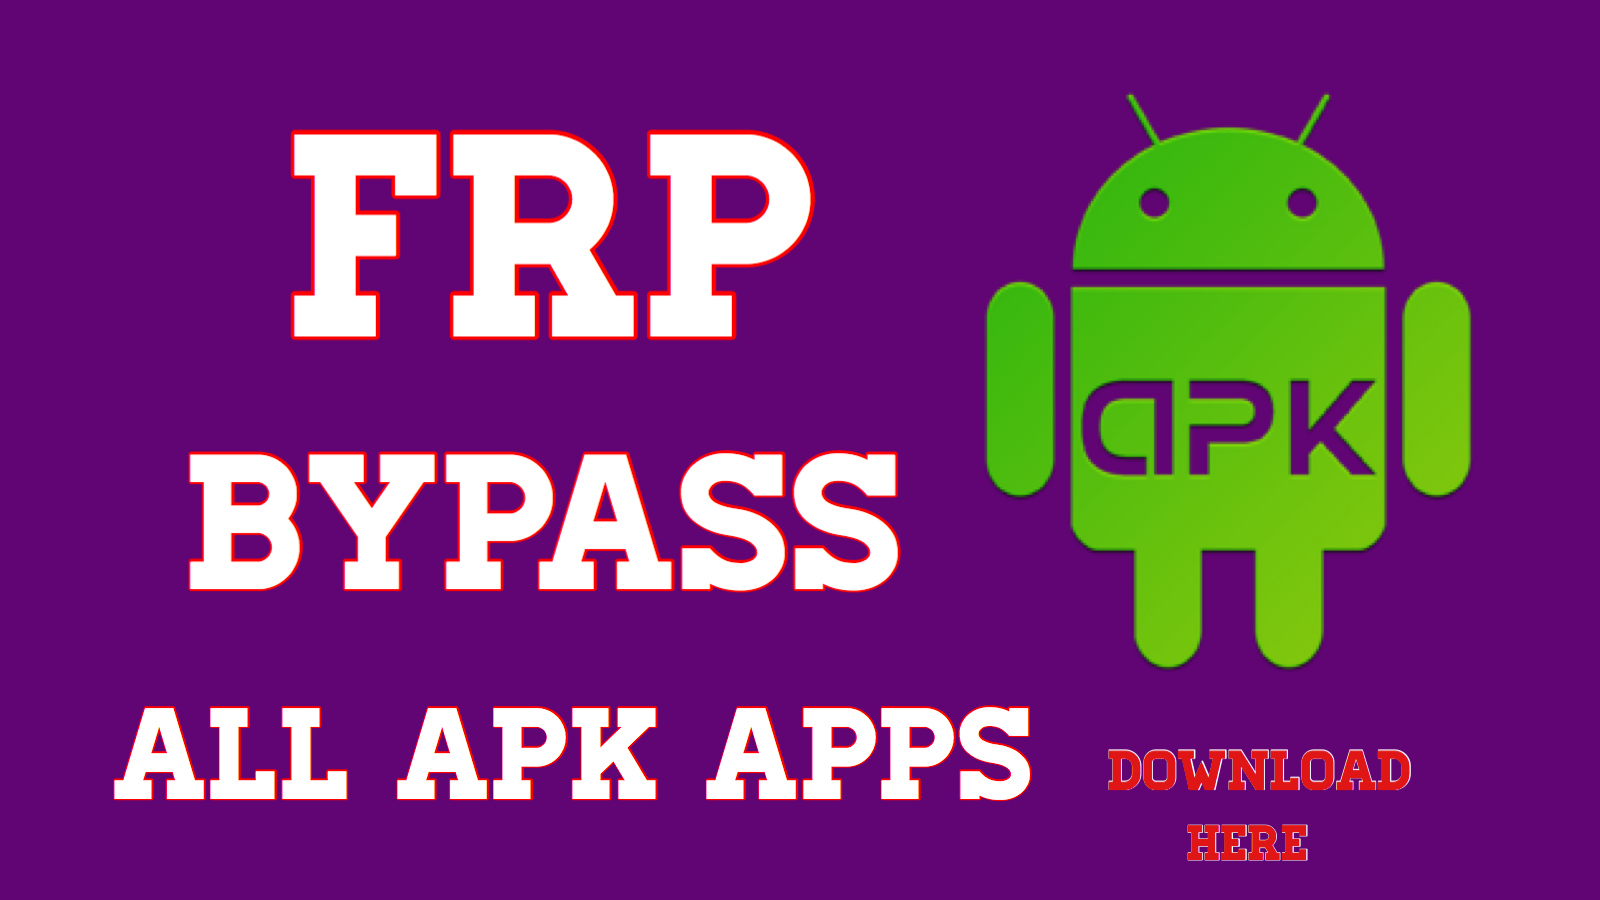 Frp bypass add. FRP Bypass. FRP Bypass Tool. FRP Bypass APK download. FRP Bypass APK ADDROM.